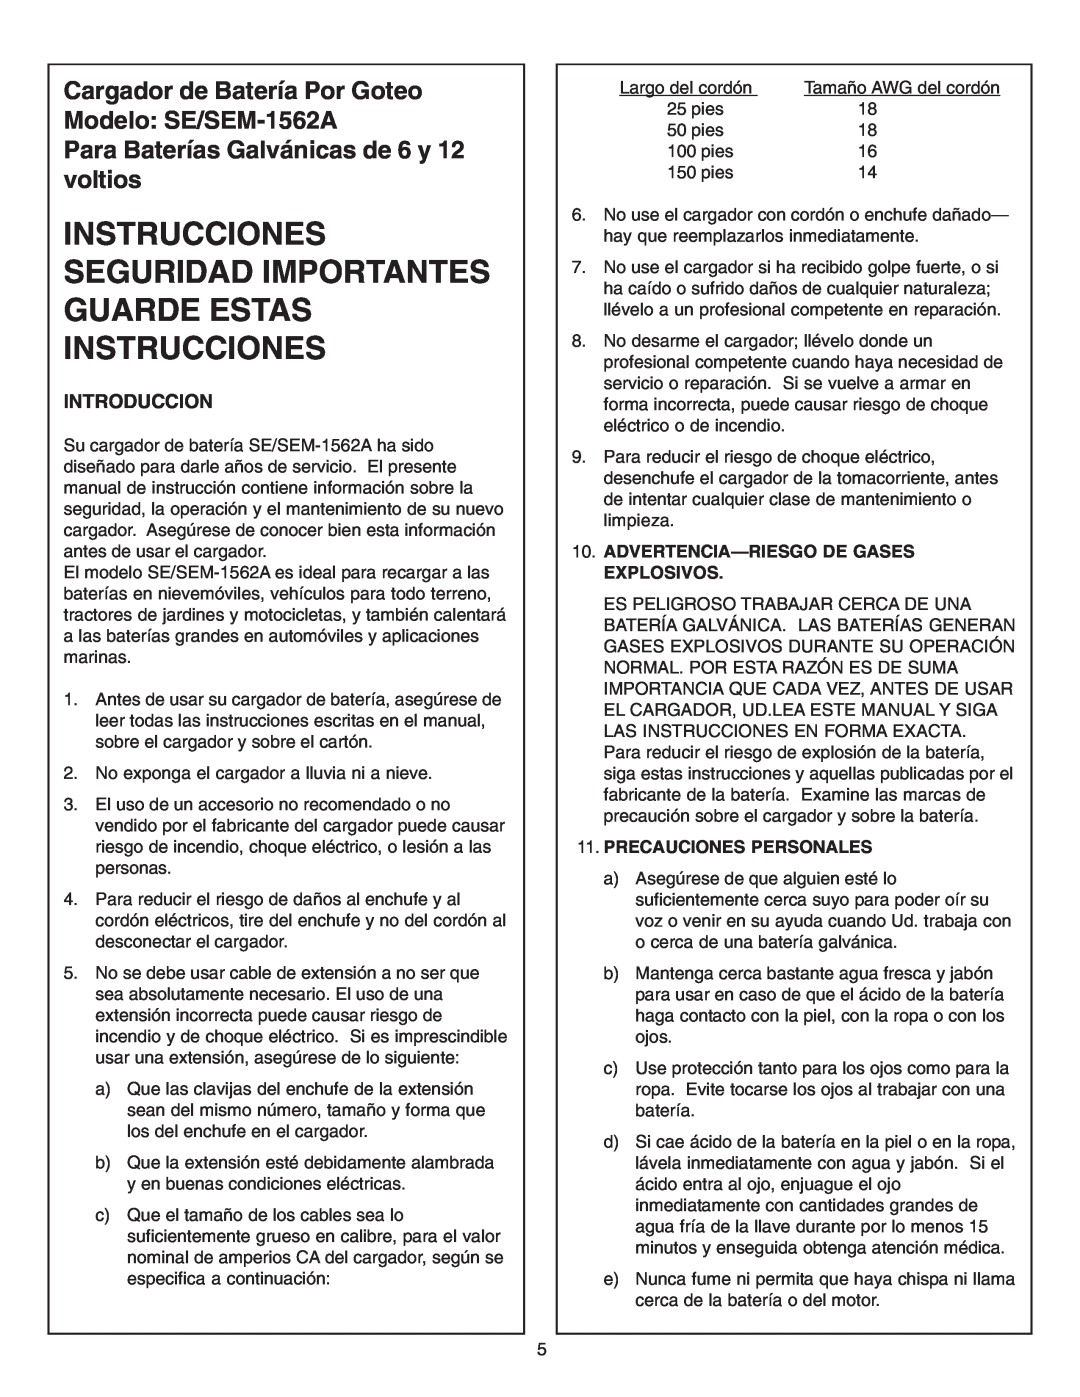 Schumacher SE-1562A Instrucciones Seguridad Importantes Guarde Estas Instrucciones, Introduccion, Precauciones Personales 